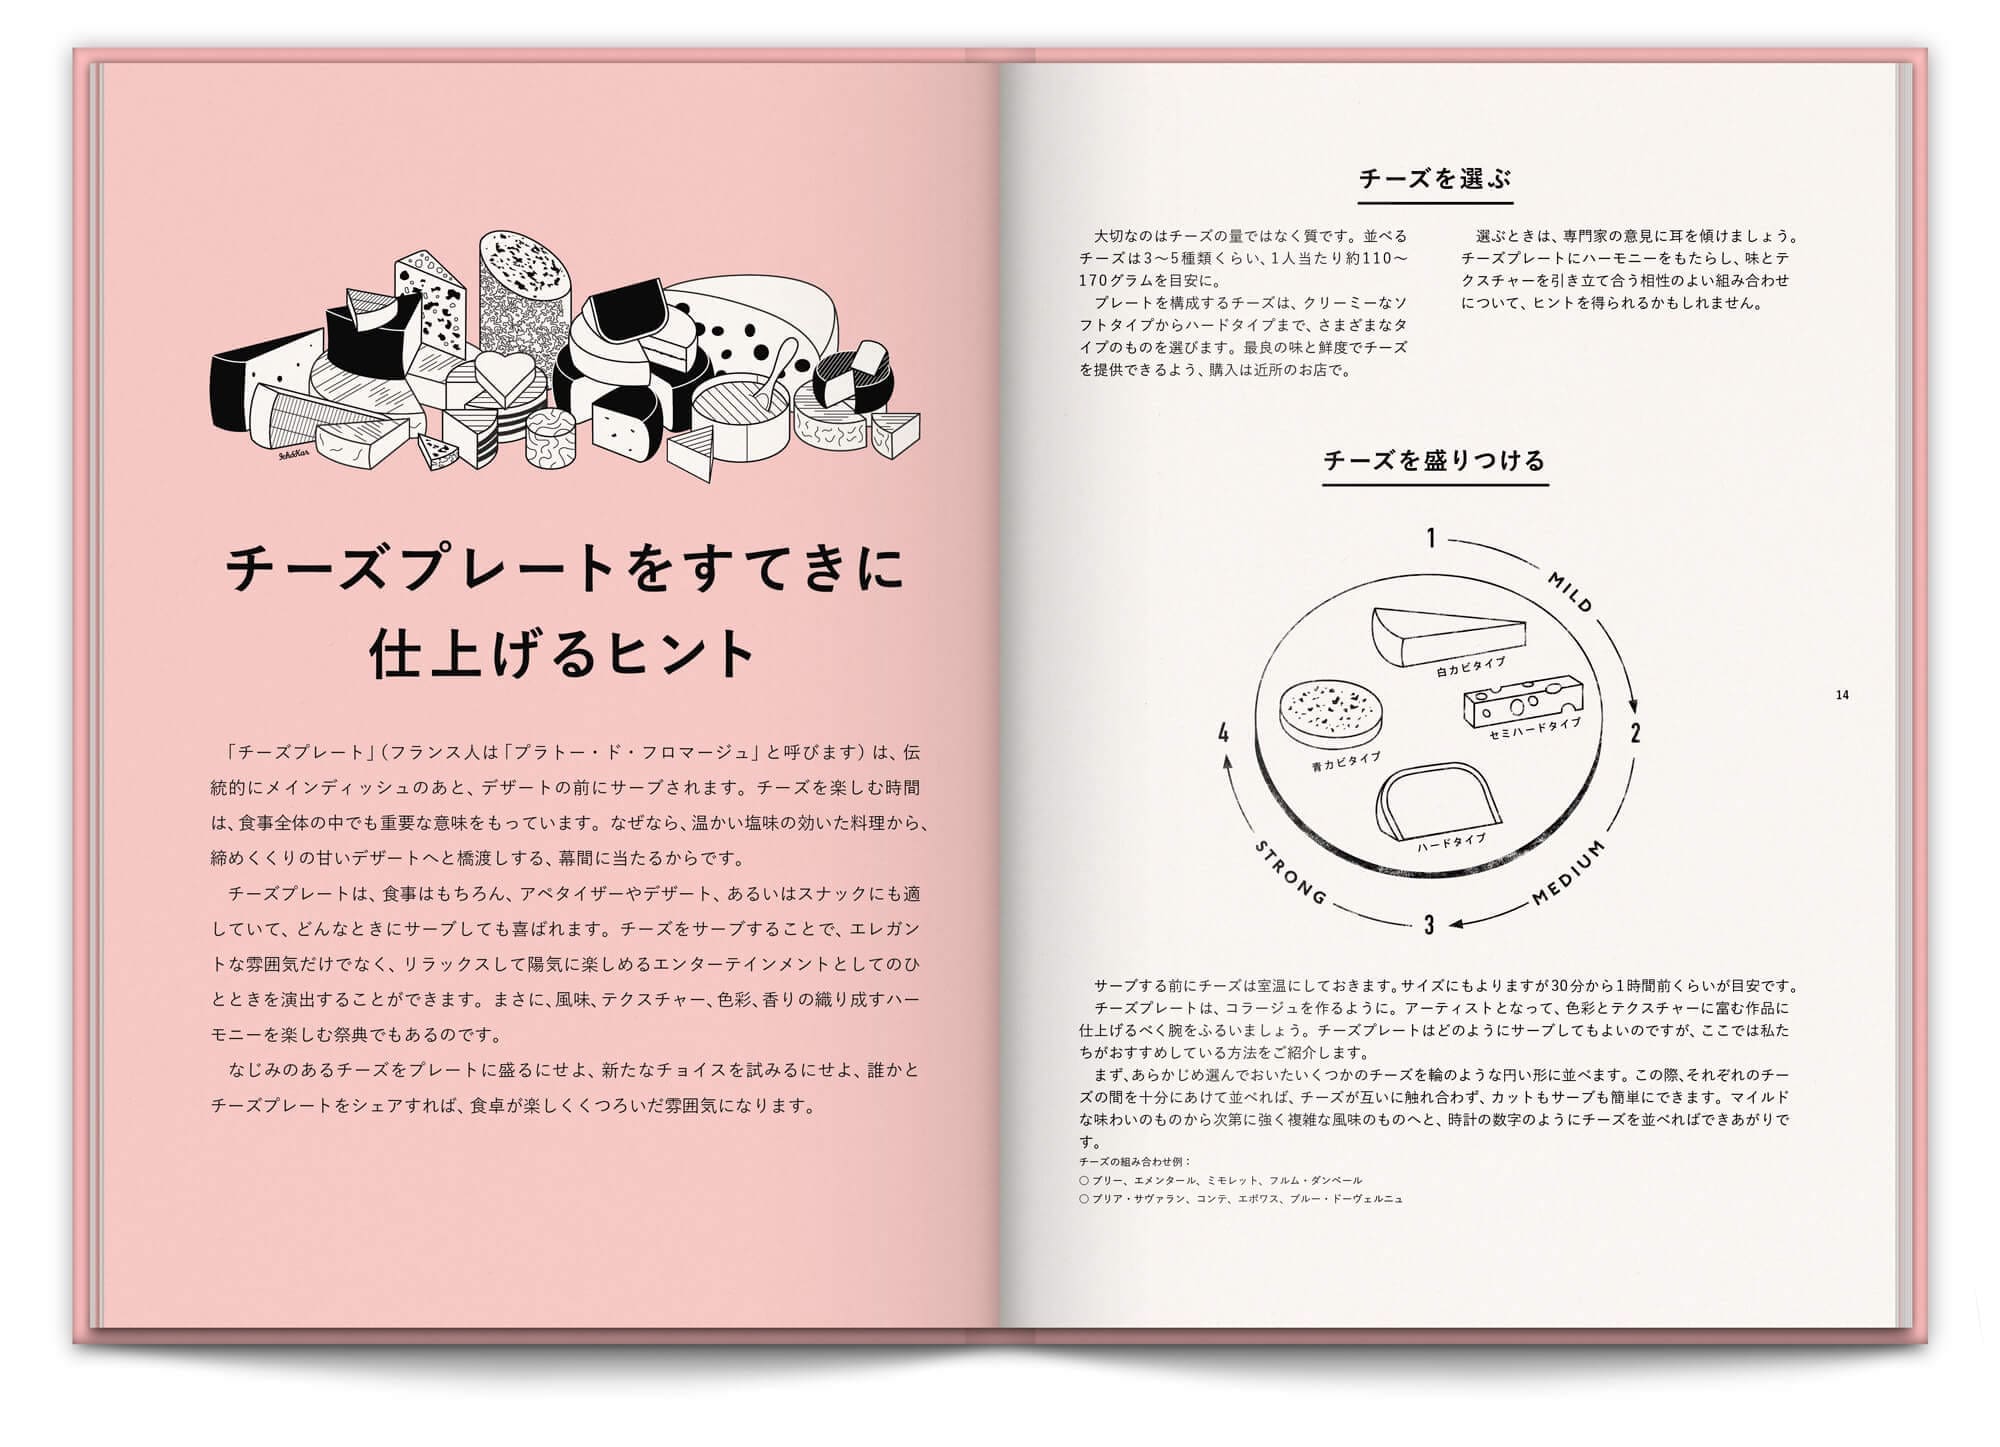 presentation et découpé du fromage dans le livre rose et tout en fleurs pour la maison du fromage à tokyo